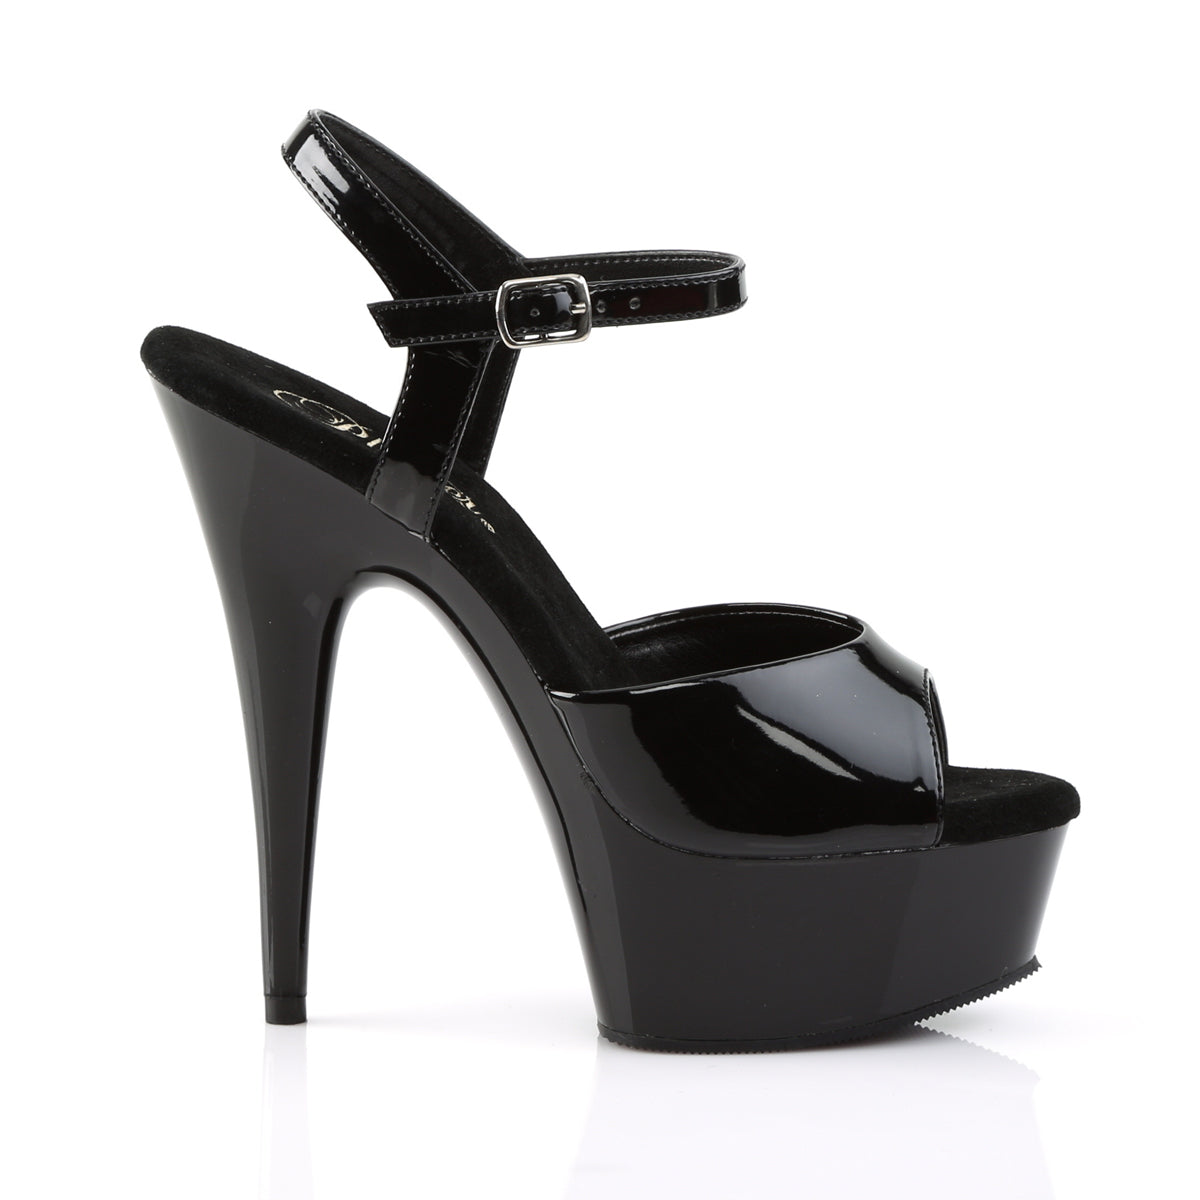 DELIGHT-609 Pleaser Black Patent Platform Shoes [Exotic Dance Shoes]